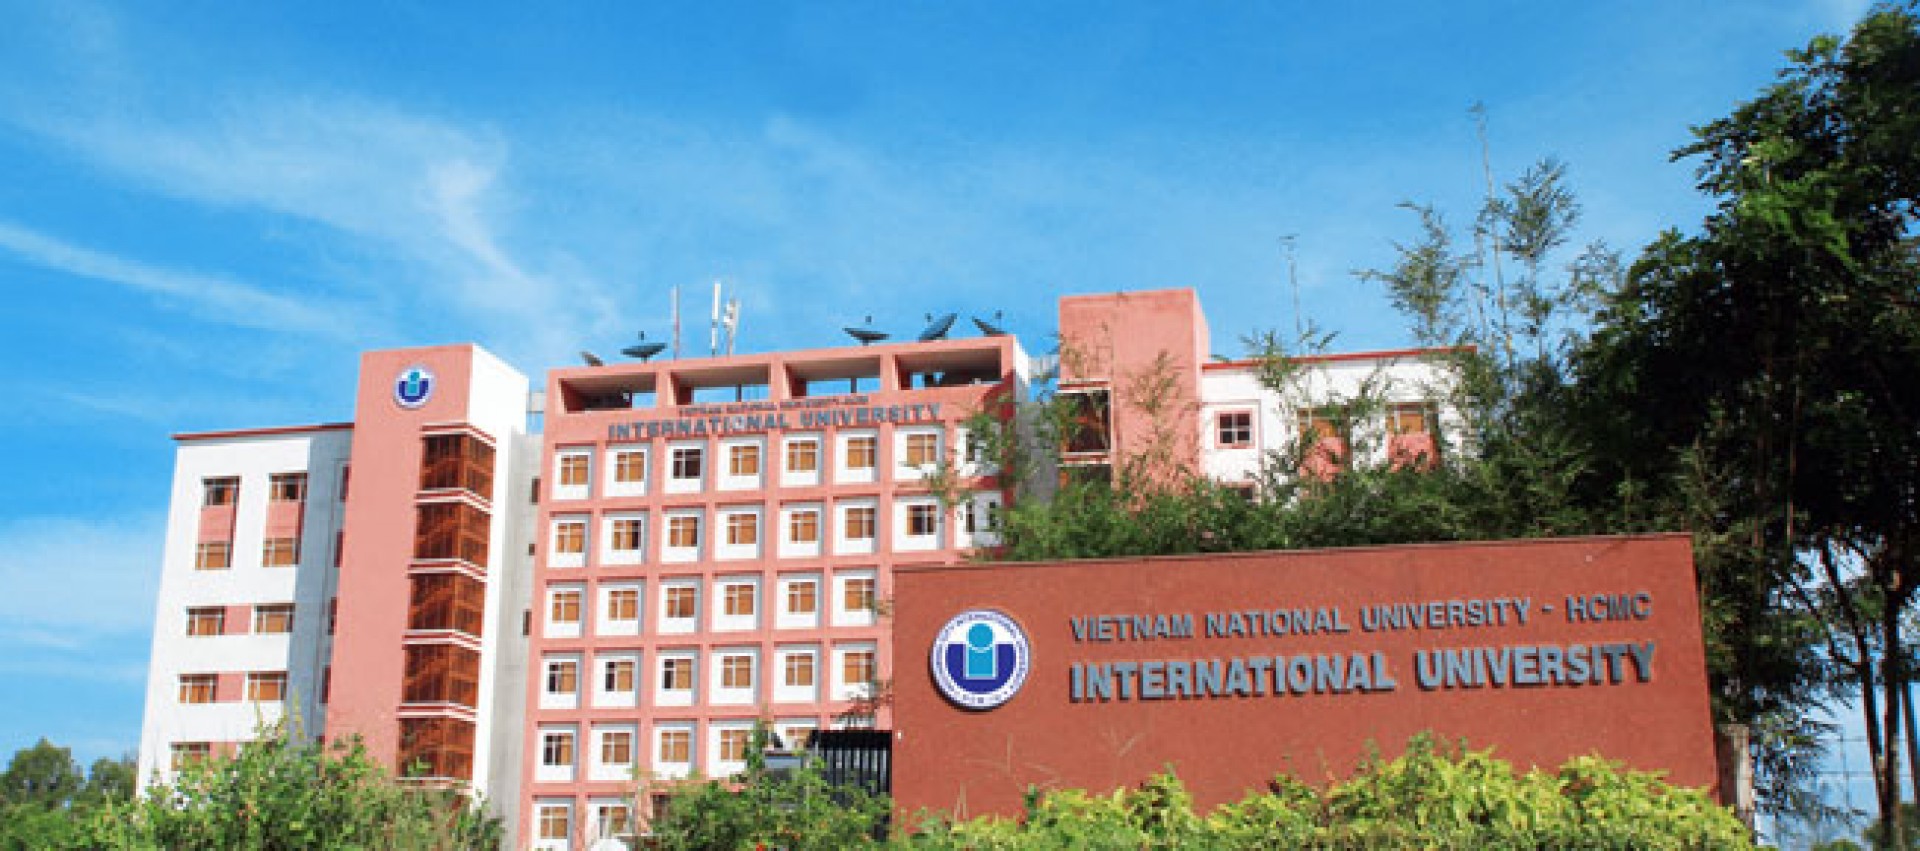 Đại học Quốc tế - Đại học Quốc gia TP. HCM từ góc nhìn trải nghiệm của sinh viên